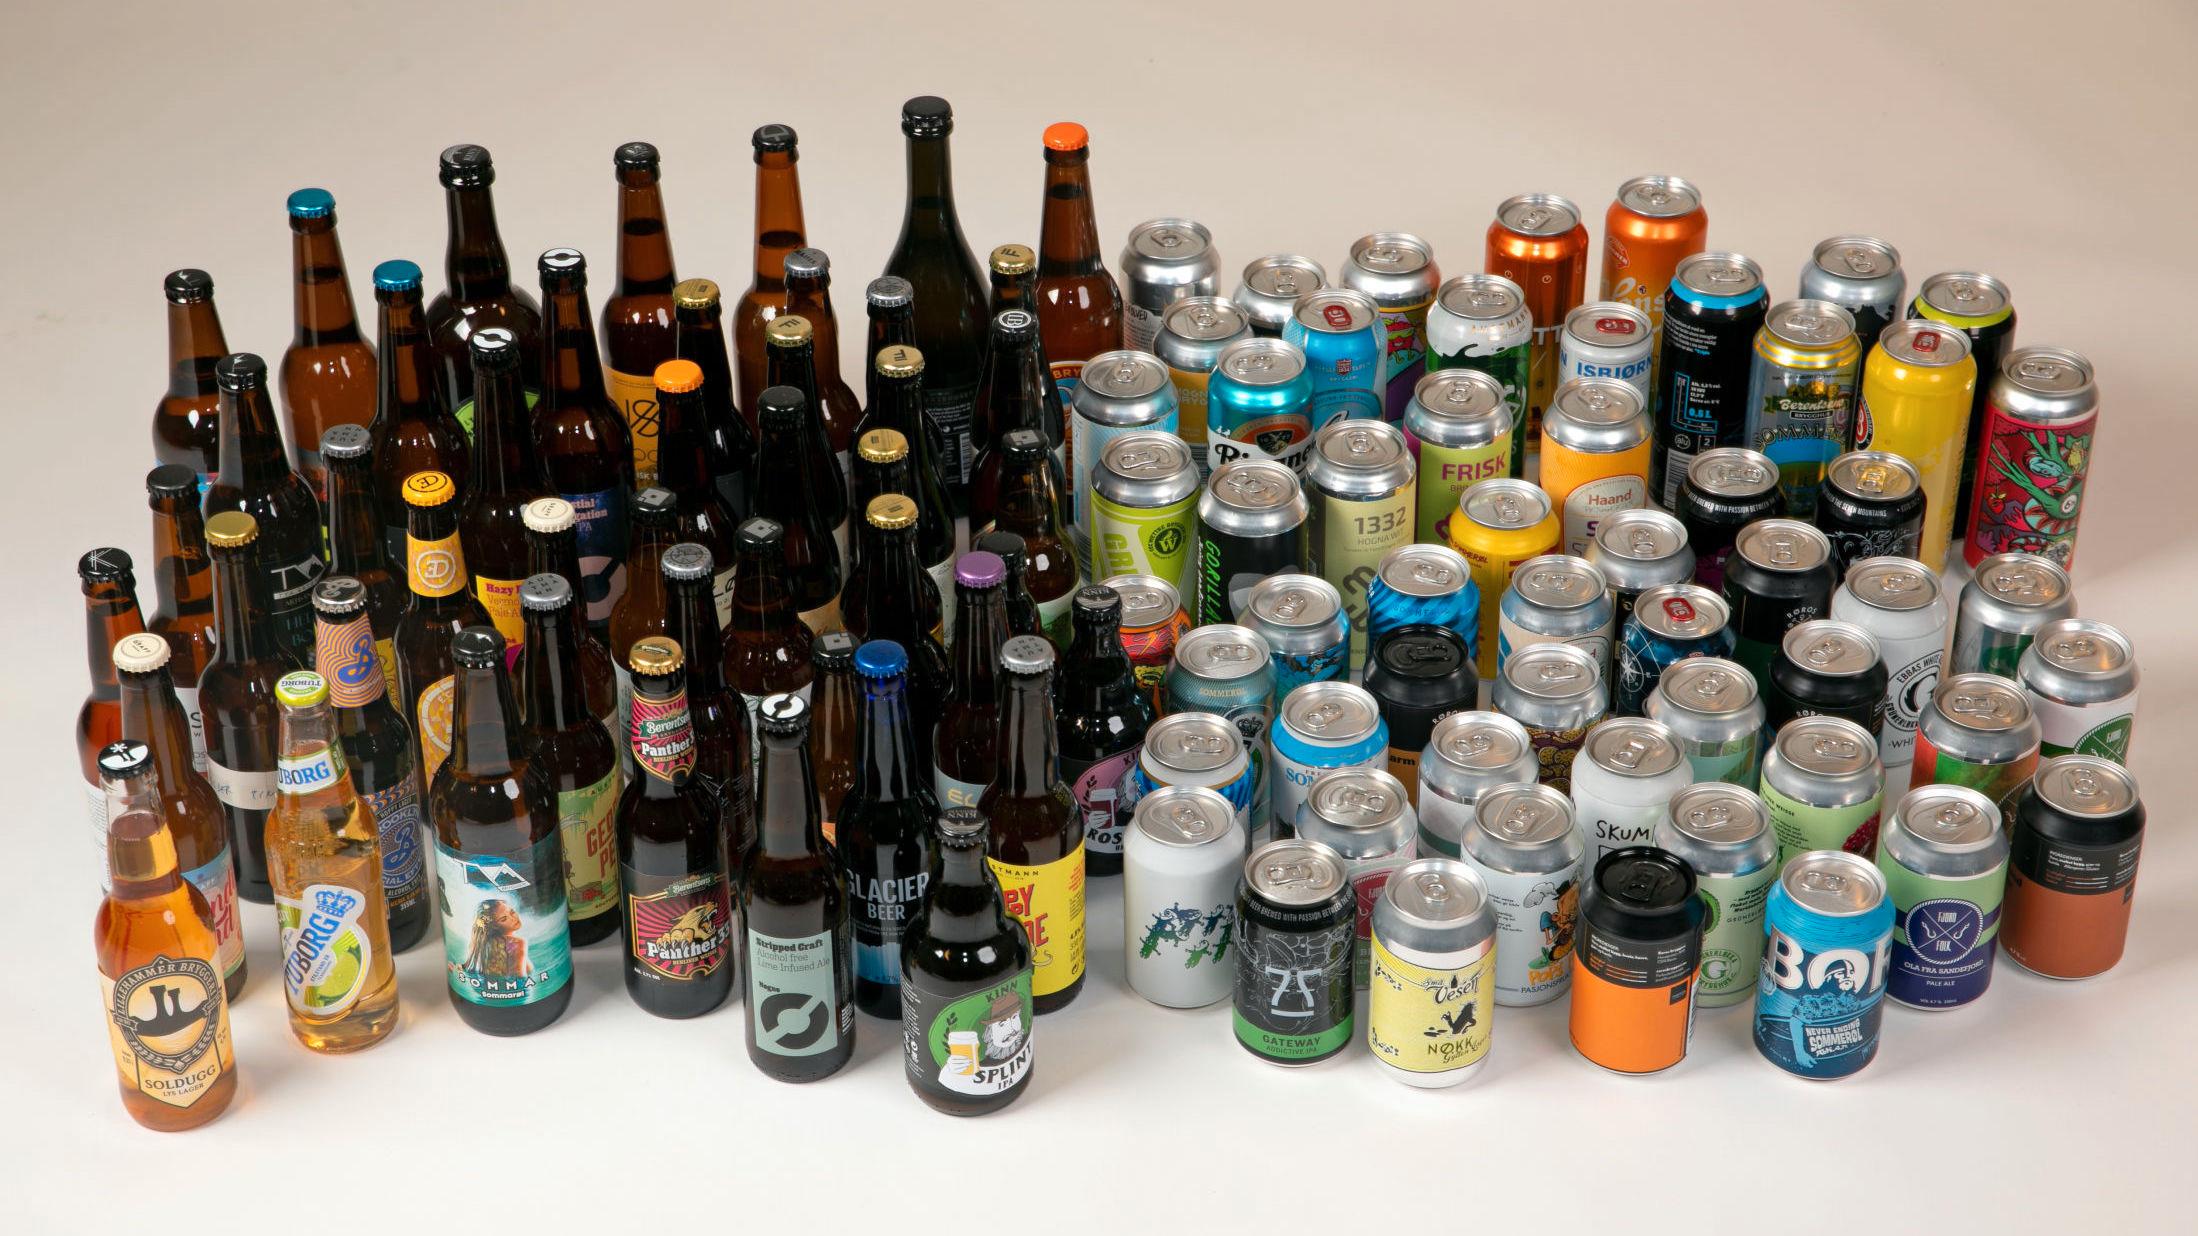 KJEMPETEST: Over 100 øl er testet og 90 produkter er kvalifisert til å være med i denne testen av norske sommerøl. Foto: Mattis Sandblad/VG